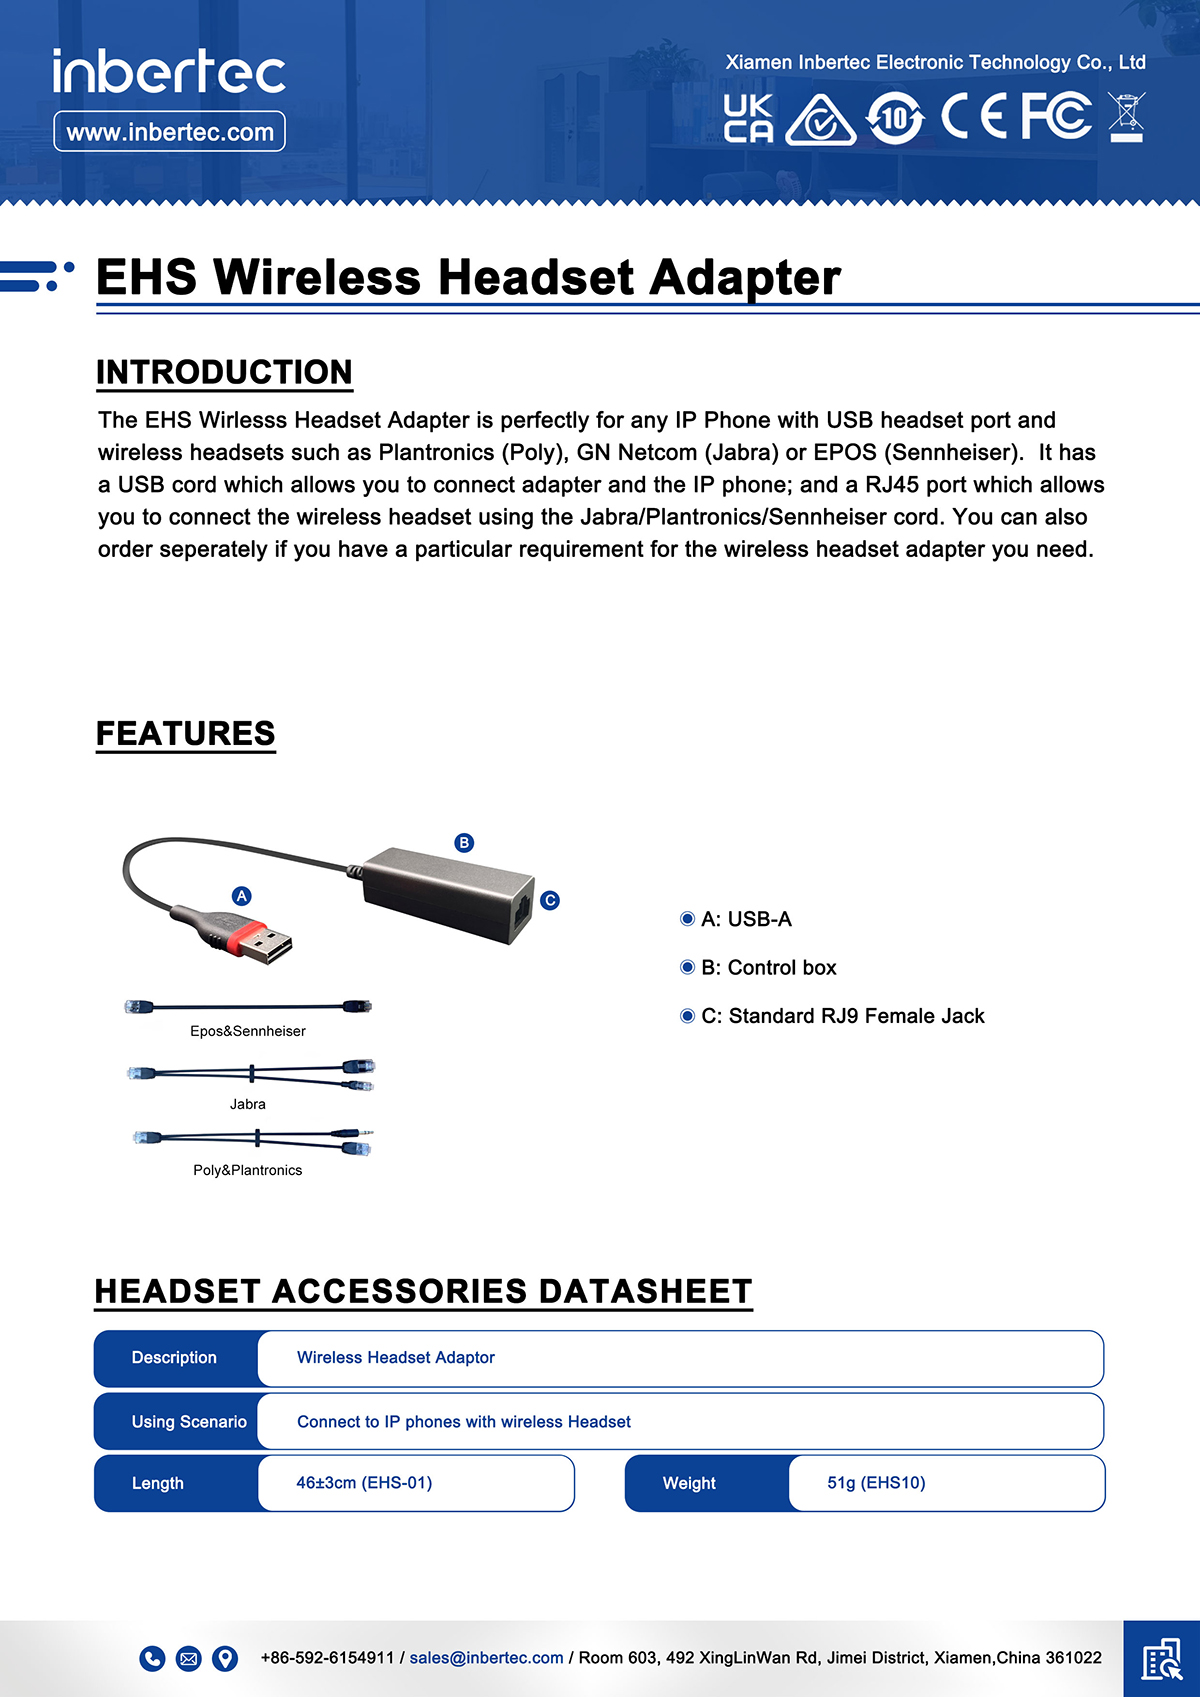 1 EHS-Wireless-Headset- Adapter